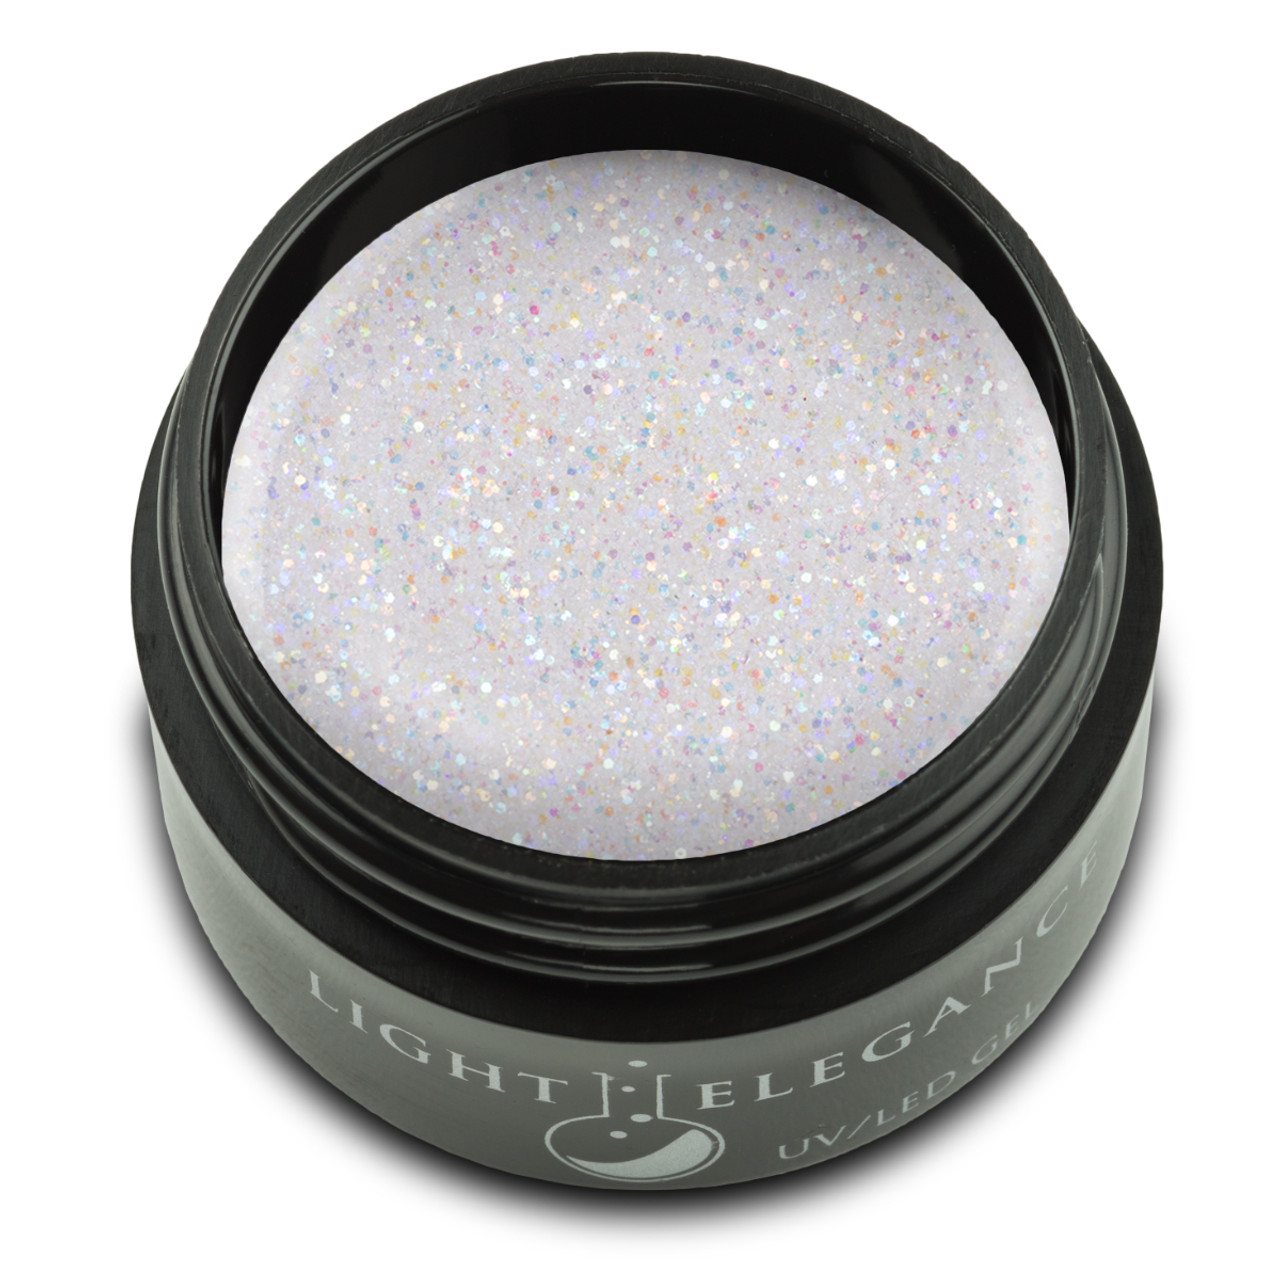 Light Elegance UV/LED Glitter Gel On the Rocks - .57 oz (17 ml)